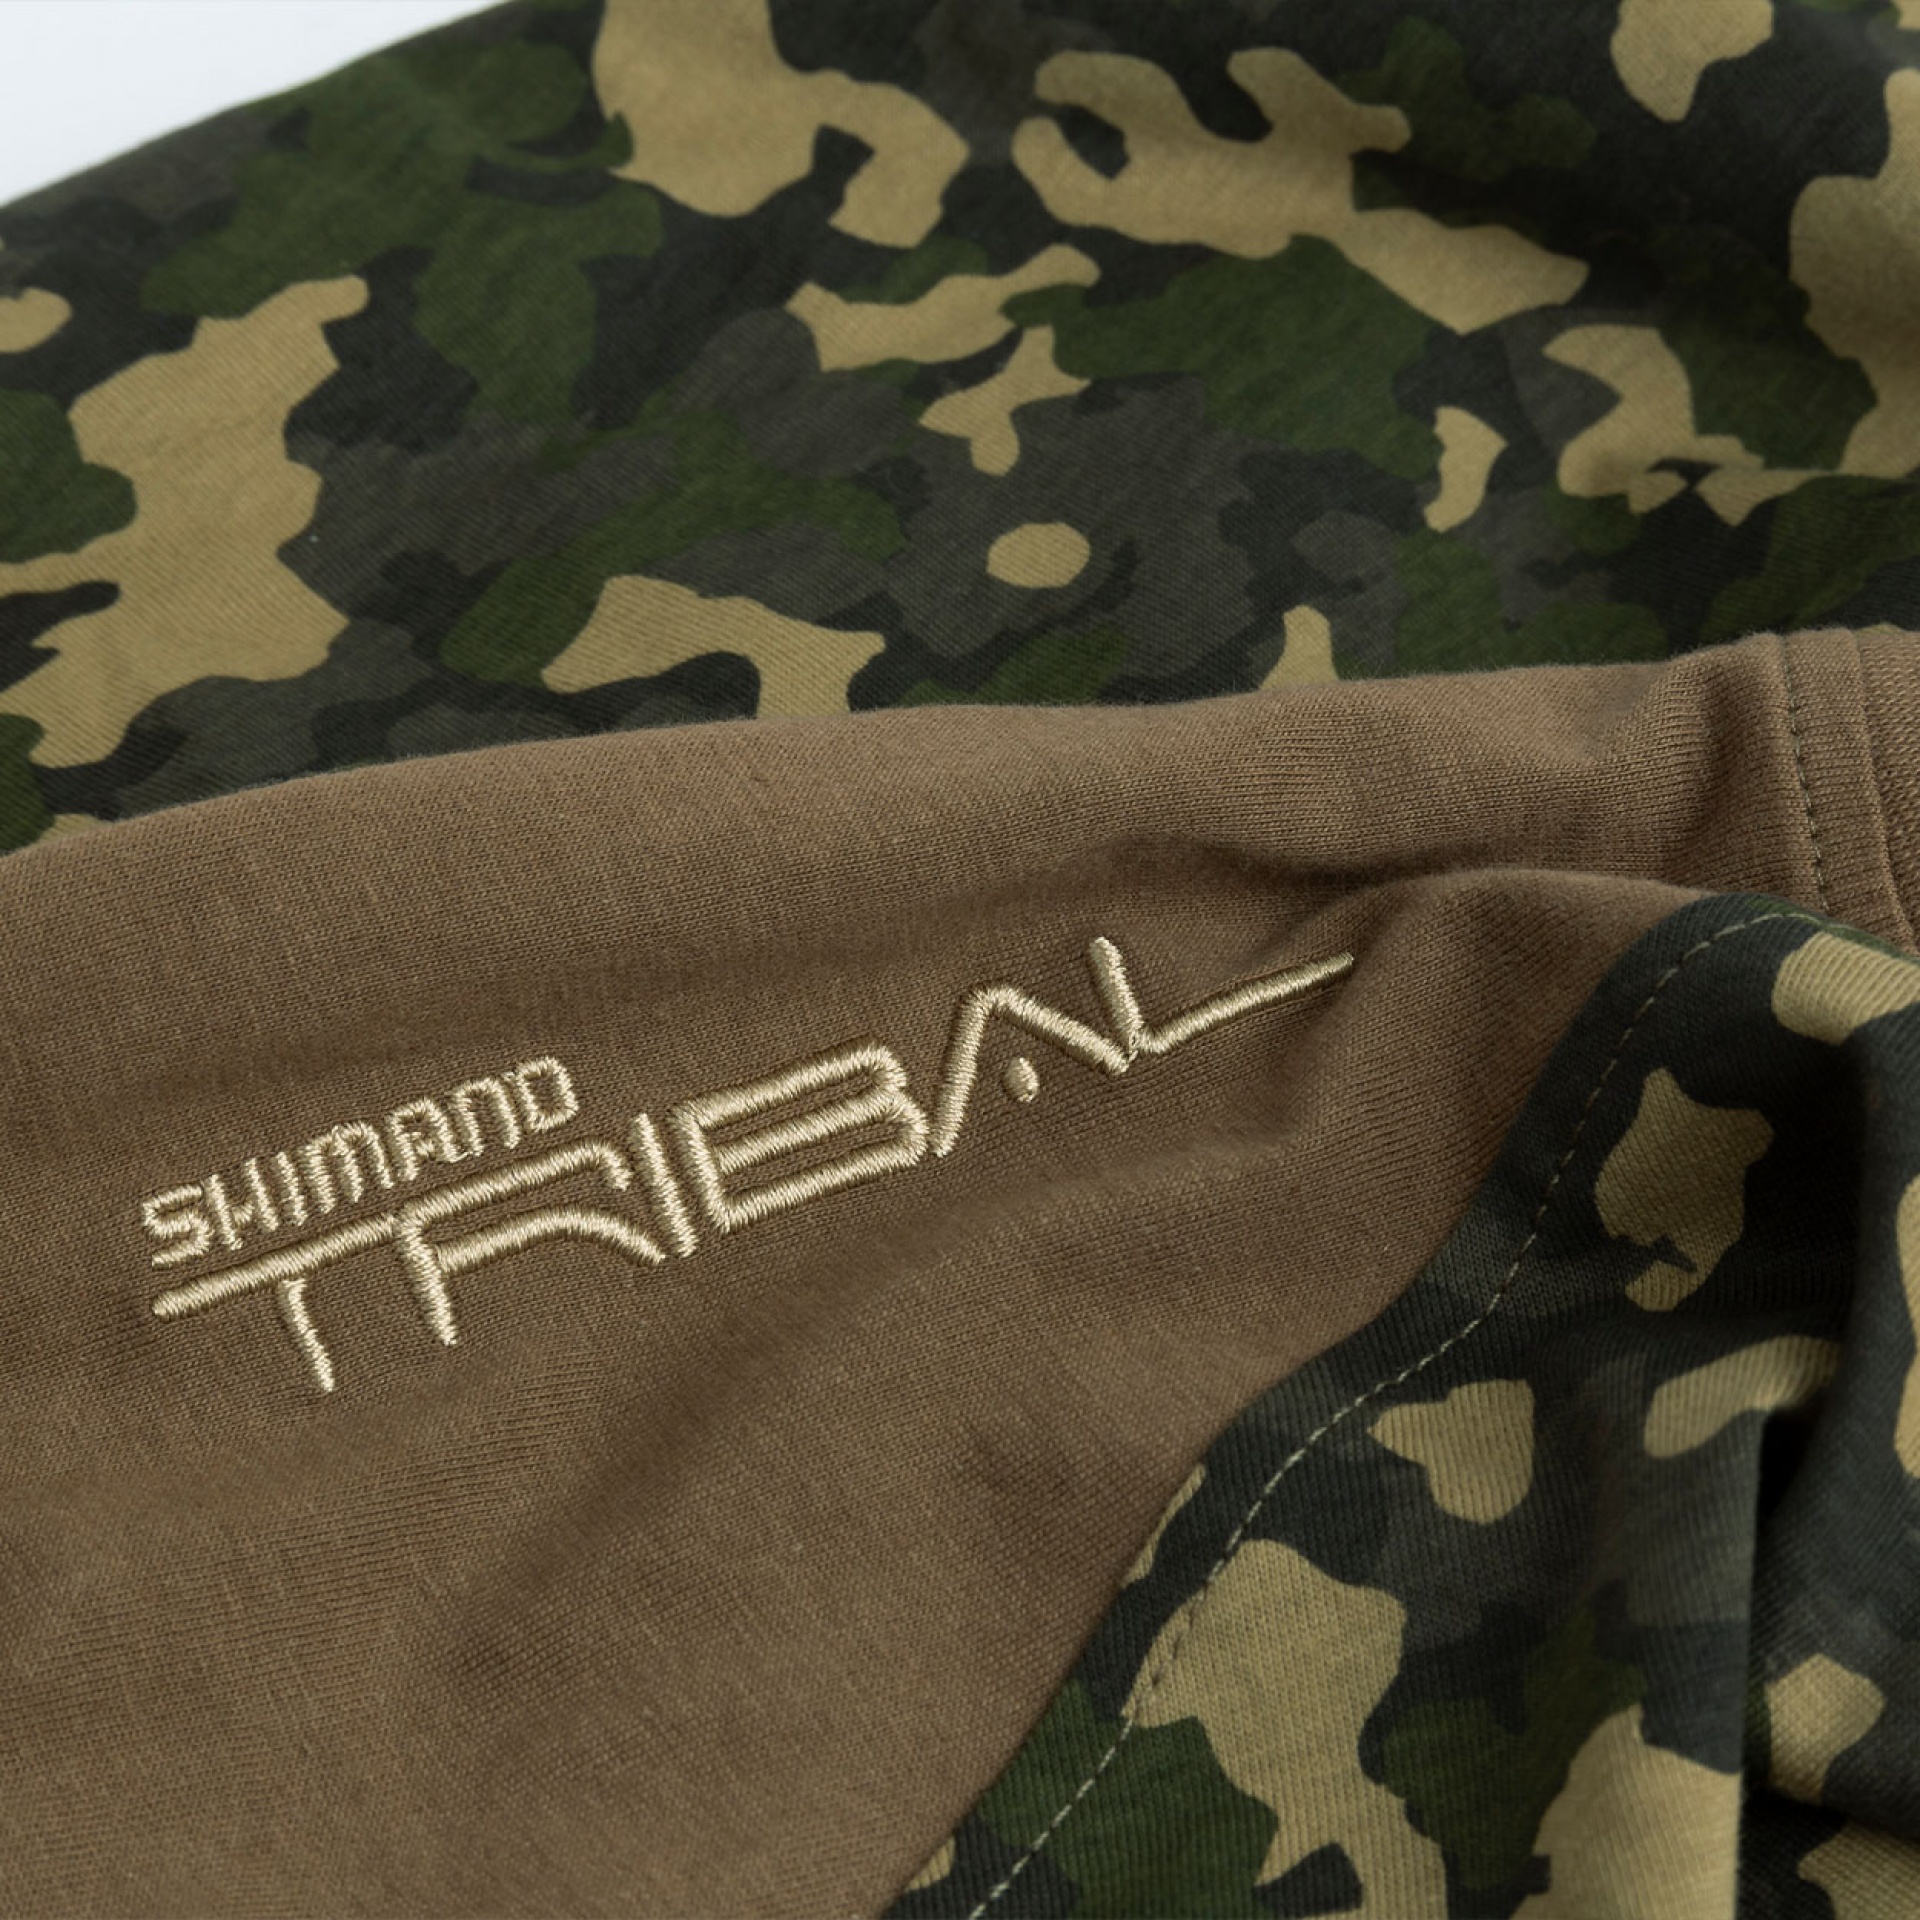 Shimano Tribal Tactical Wear Tricam T-Shirt